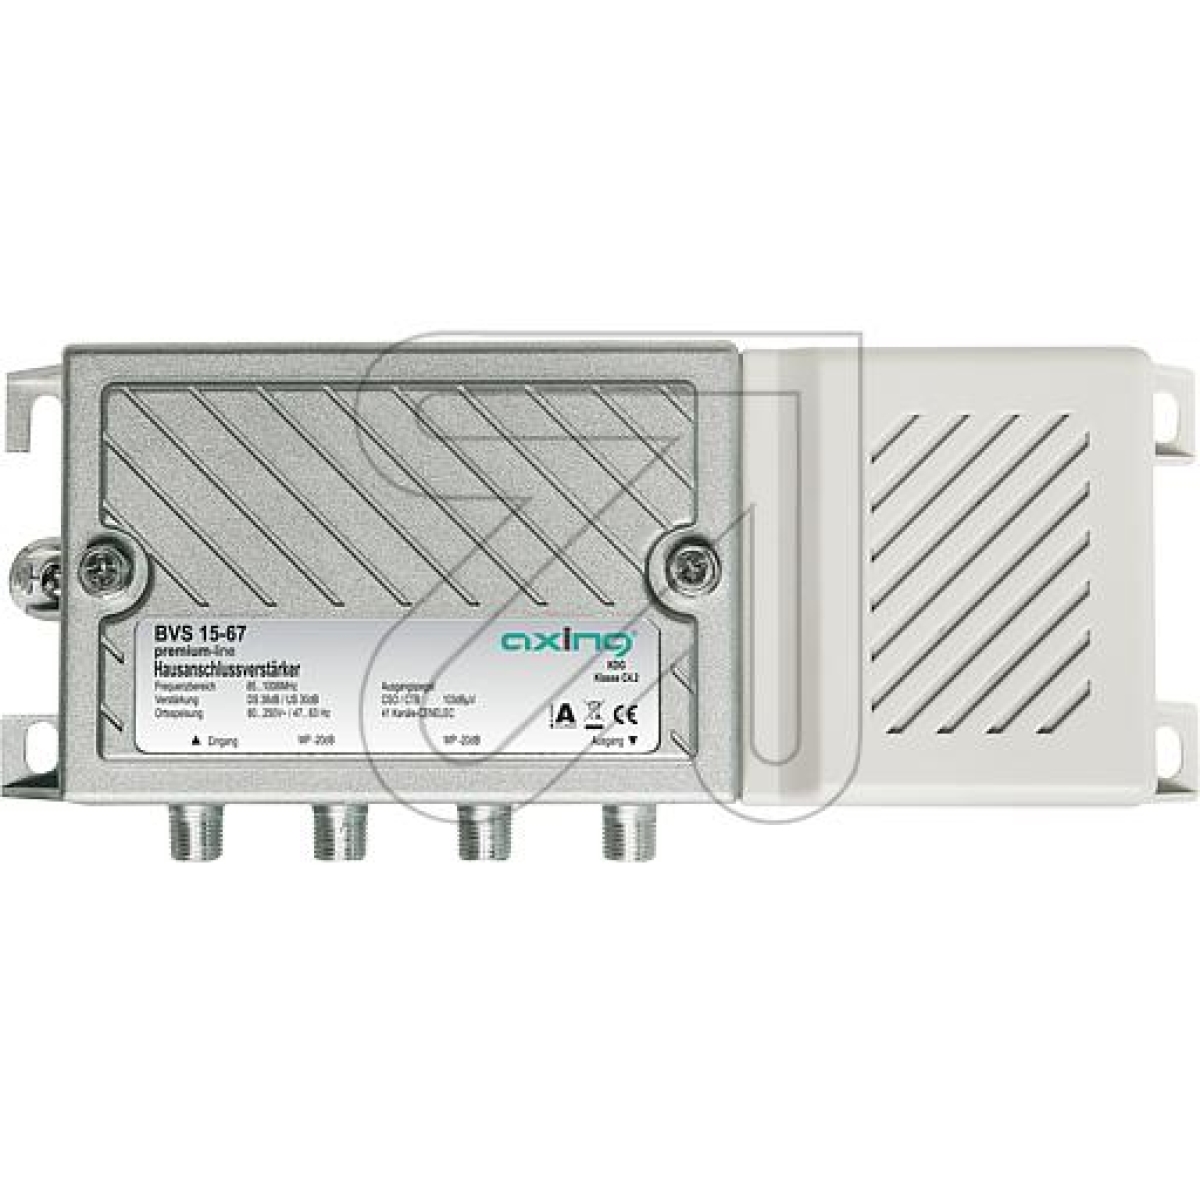 AxingHouse connection amplifier BVS 15-68 (BVS 15-67)Article-No: 254685